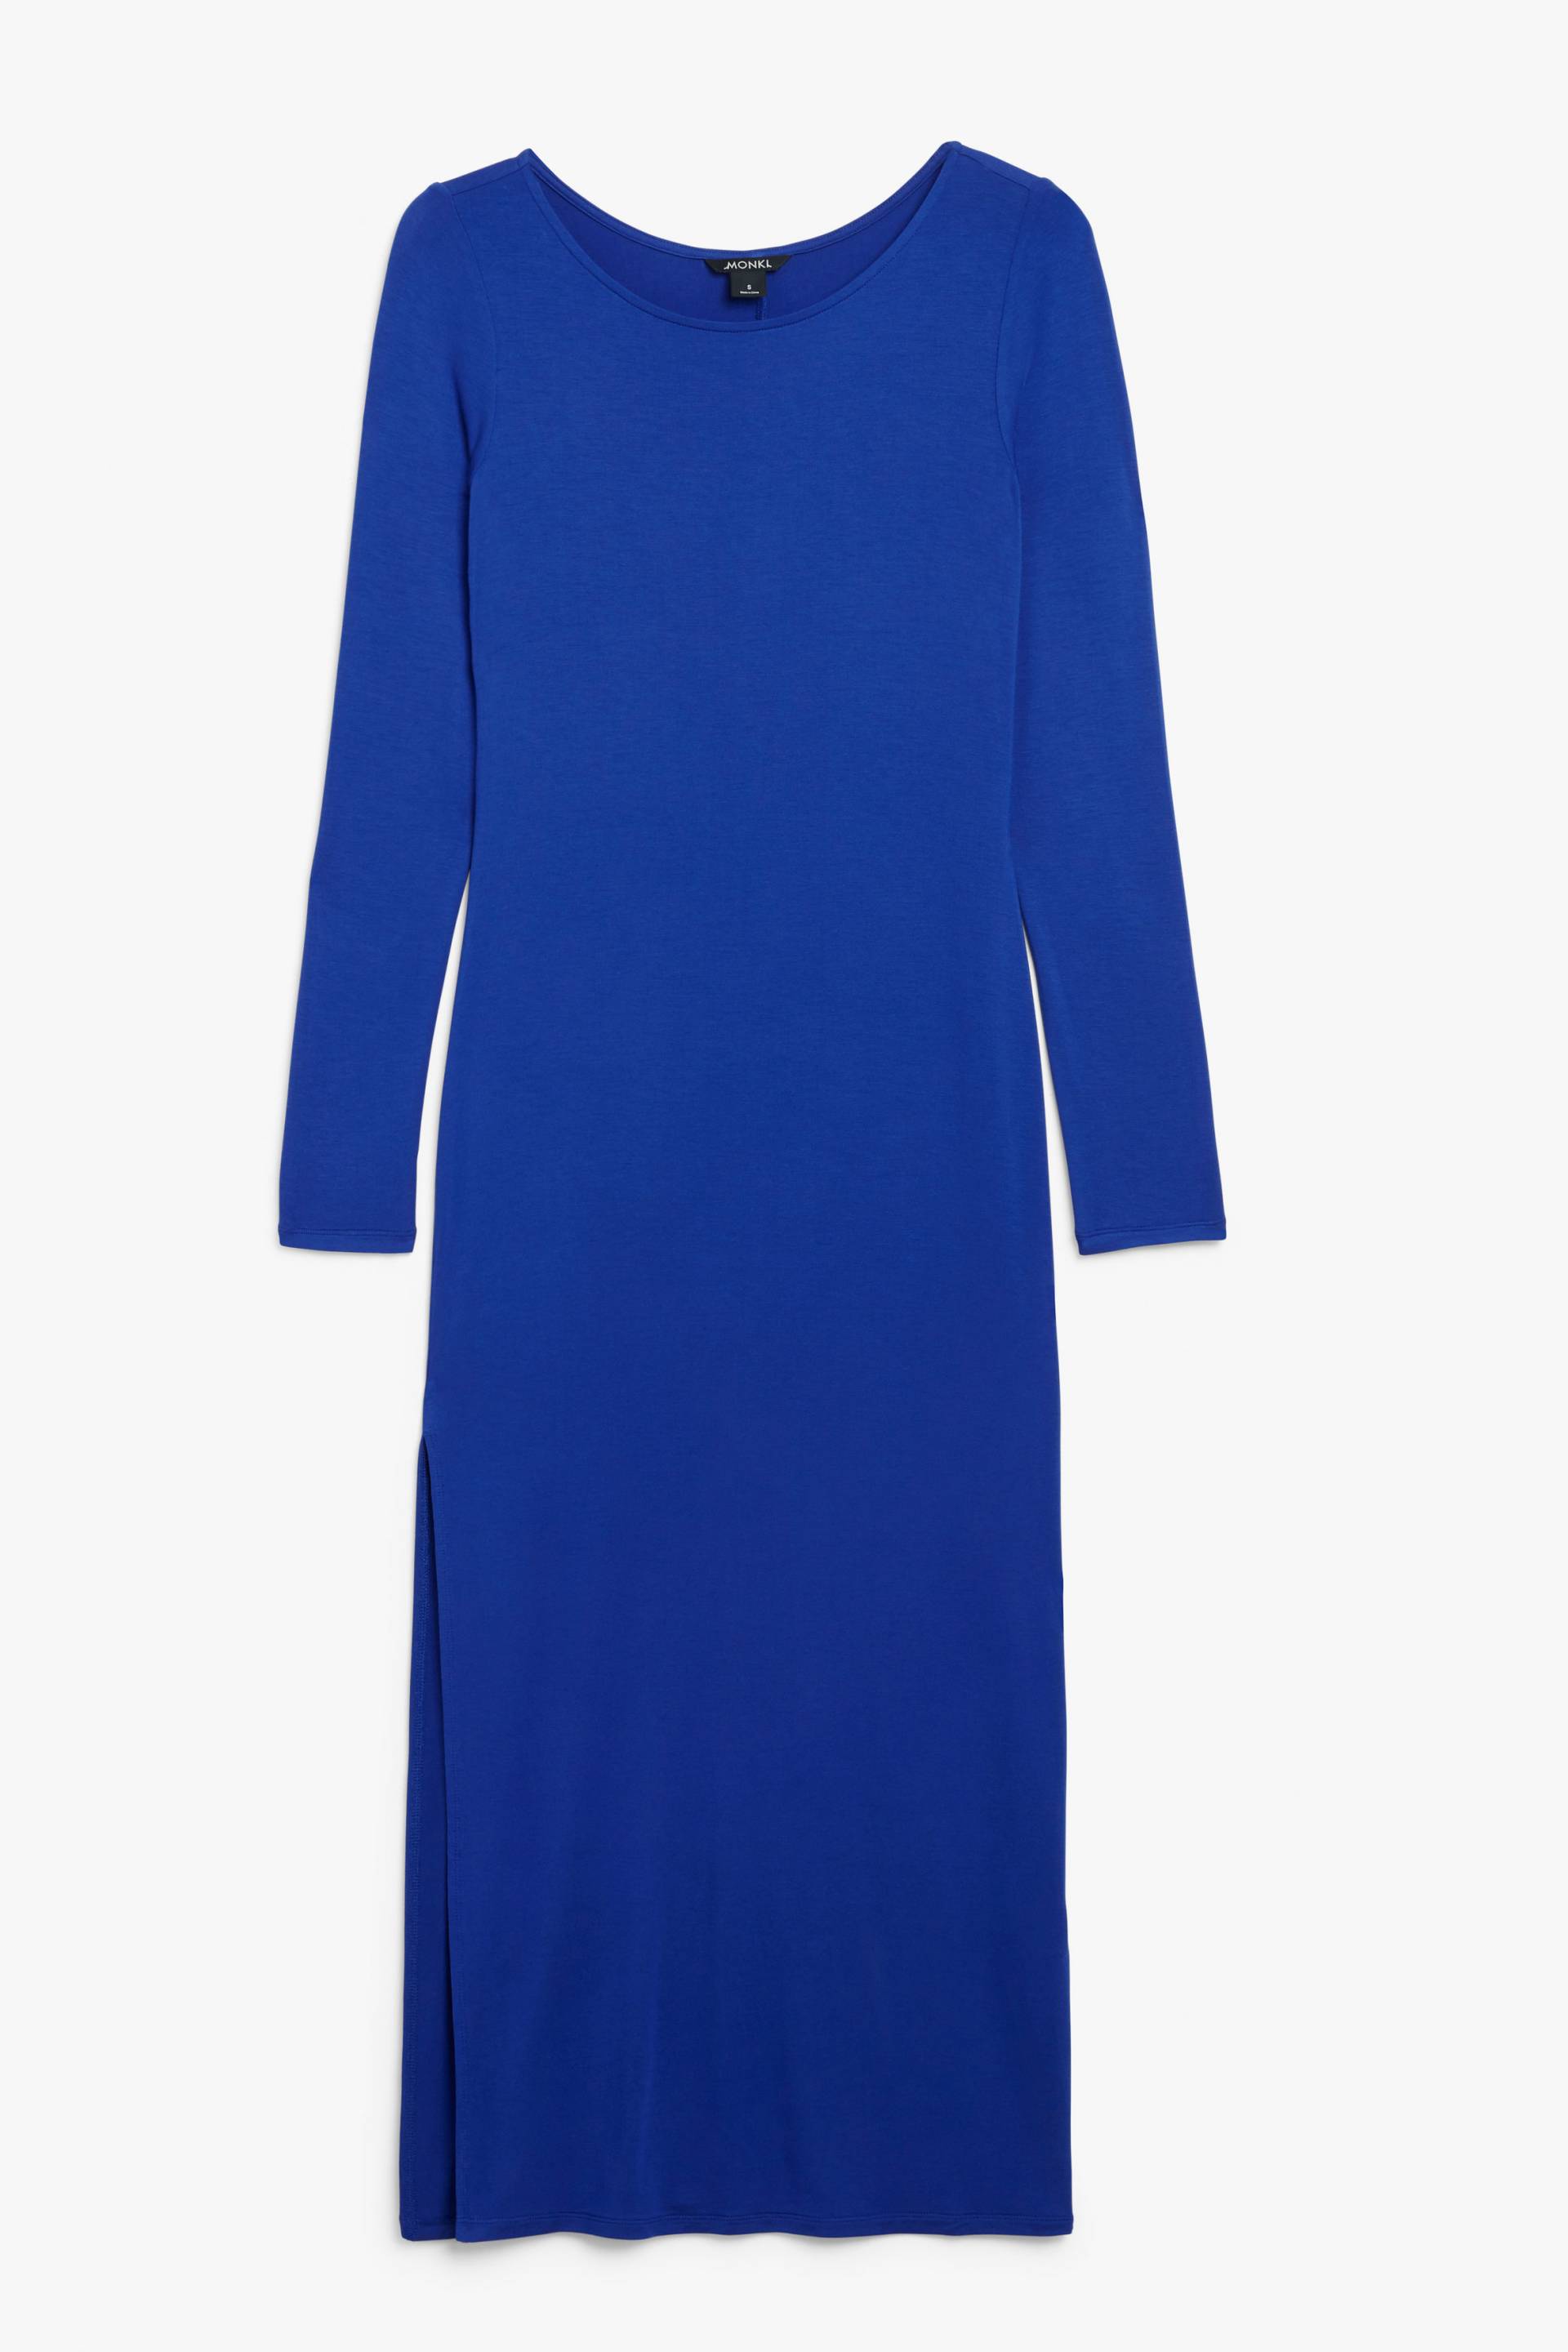 Monki Langärmeliges Bodycon-Kleid Königsblau, Alltagskleider in Größe XL. Farbe: Royal blue von Monki